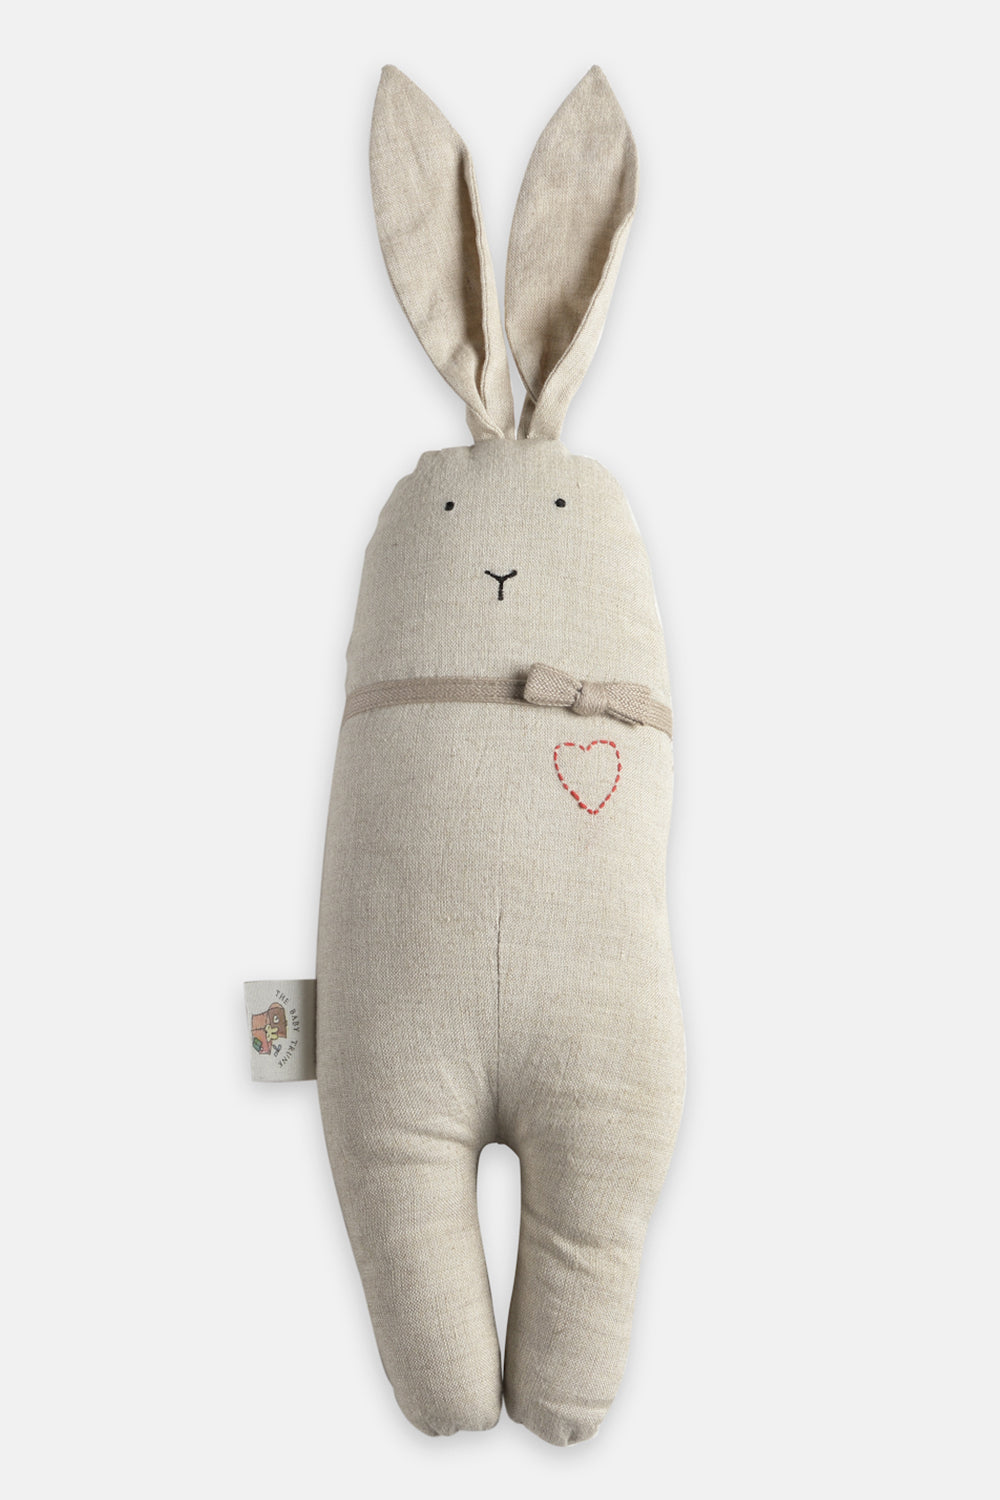 Rabbit Rag Doll, Baby Soft Toy